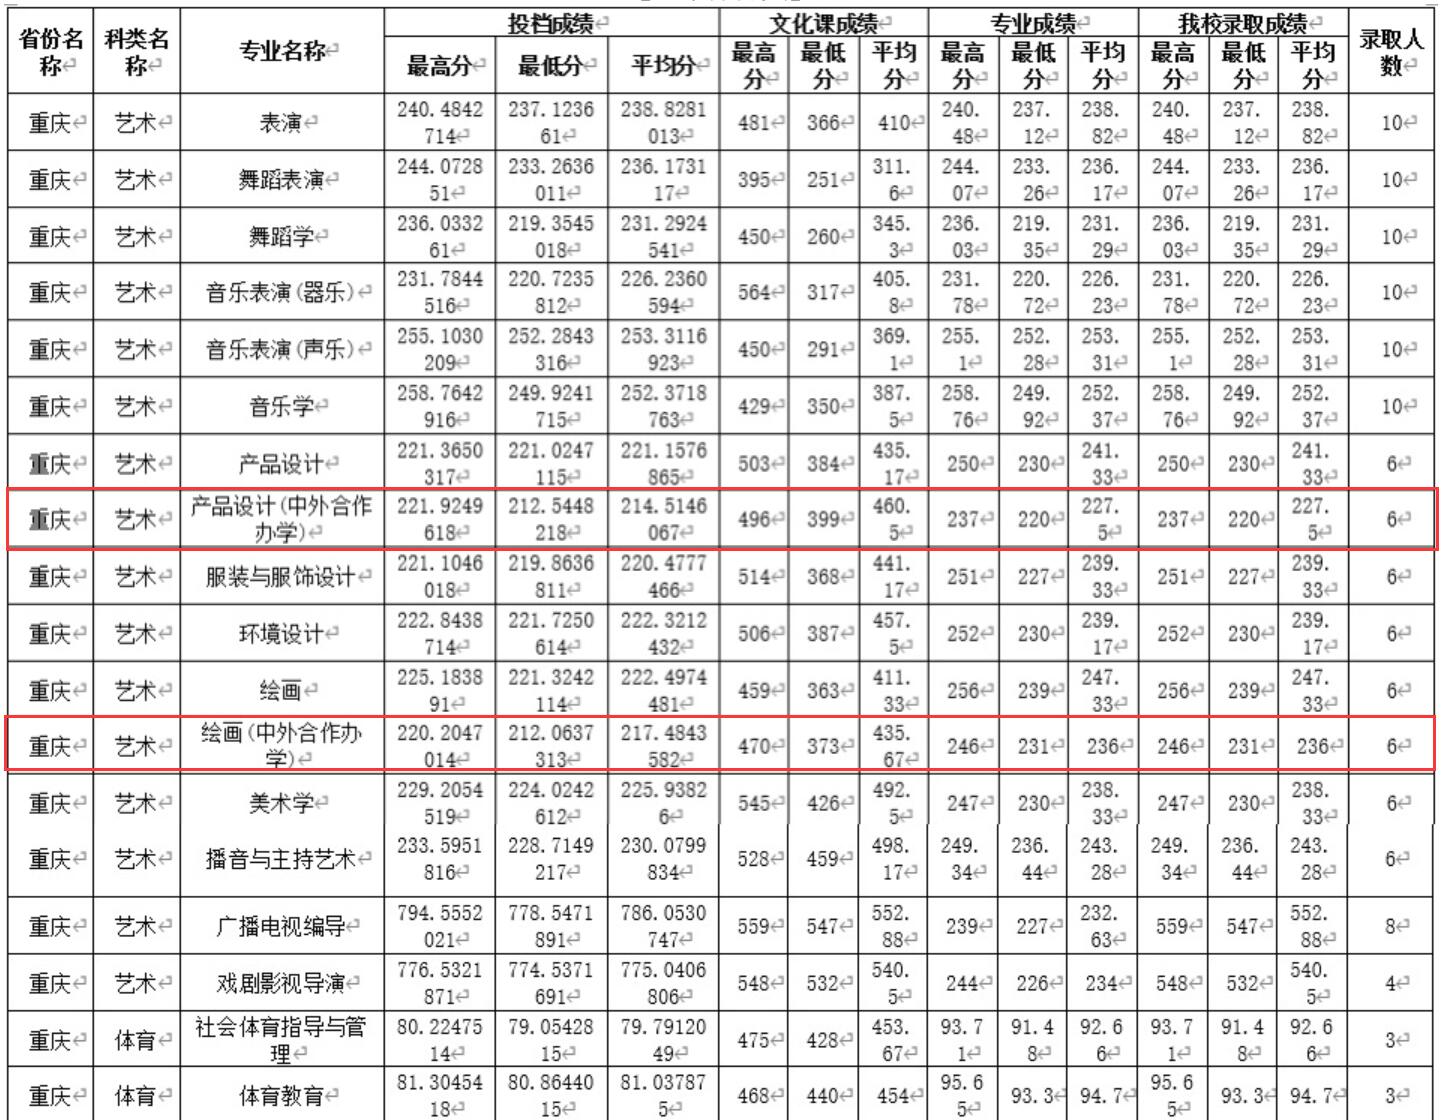 2021四川师范大学中外合作办学分数线(含2019-2020历年)